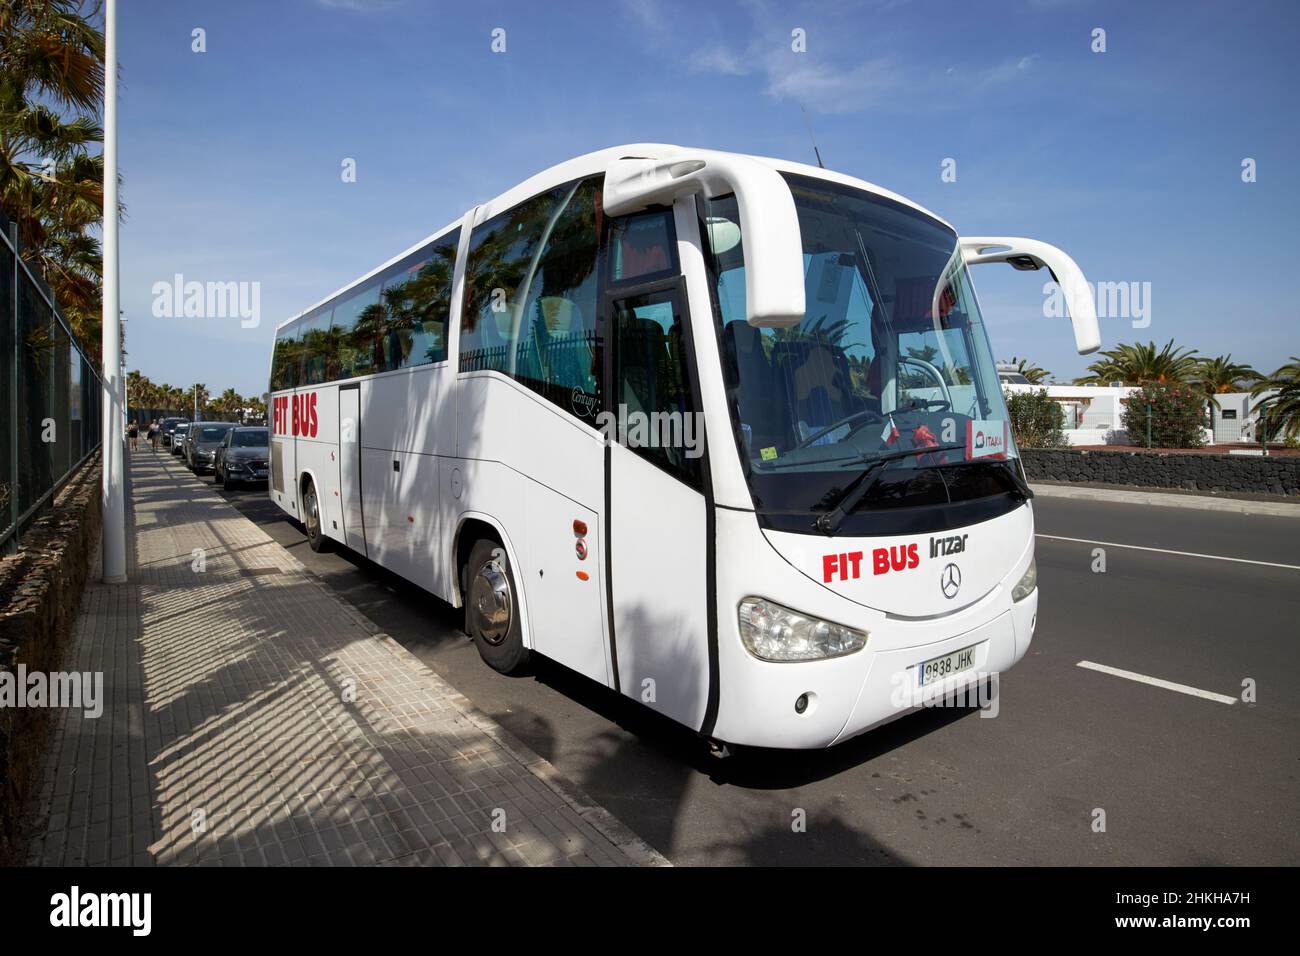 spanisch gemacht irizar mercedes Tourist Tour Bus fit Bus vor dem Hotel playa blanca Lanzarote Kanarische Inseln Spanien geparkt Stockfoto